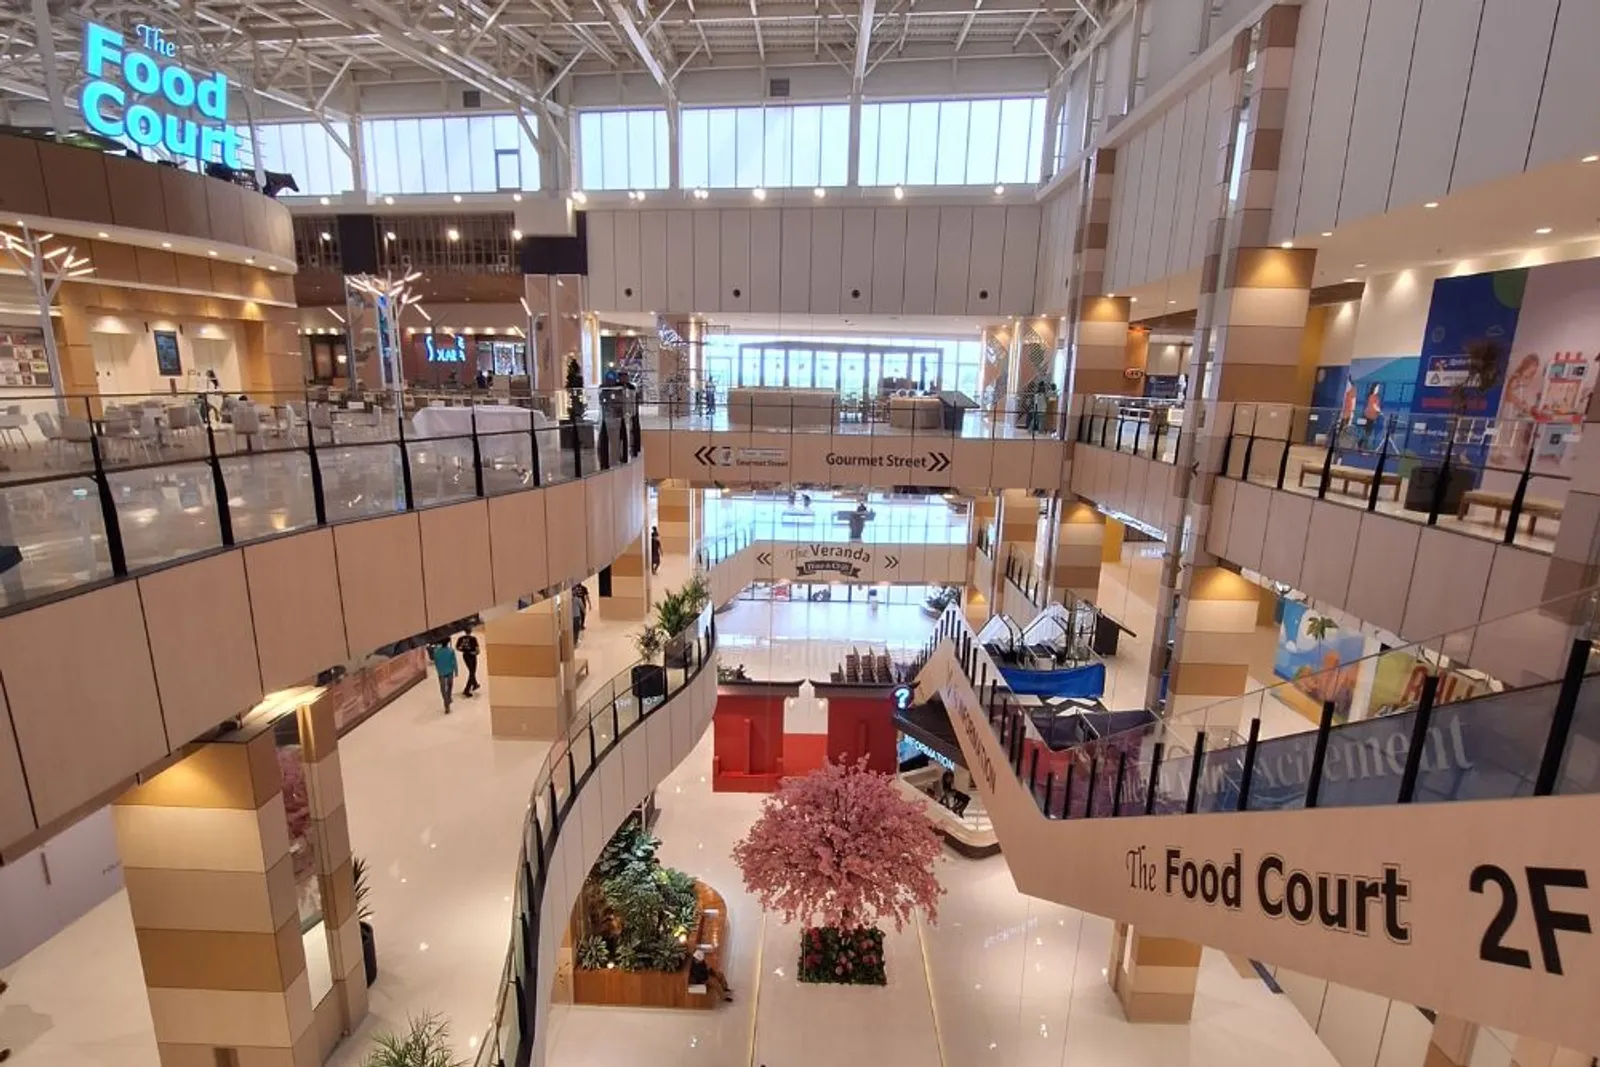 AEON Mall Deltamas Terbesar se-Asia Tenggara, Ini Hal Menariknya!